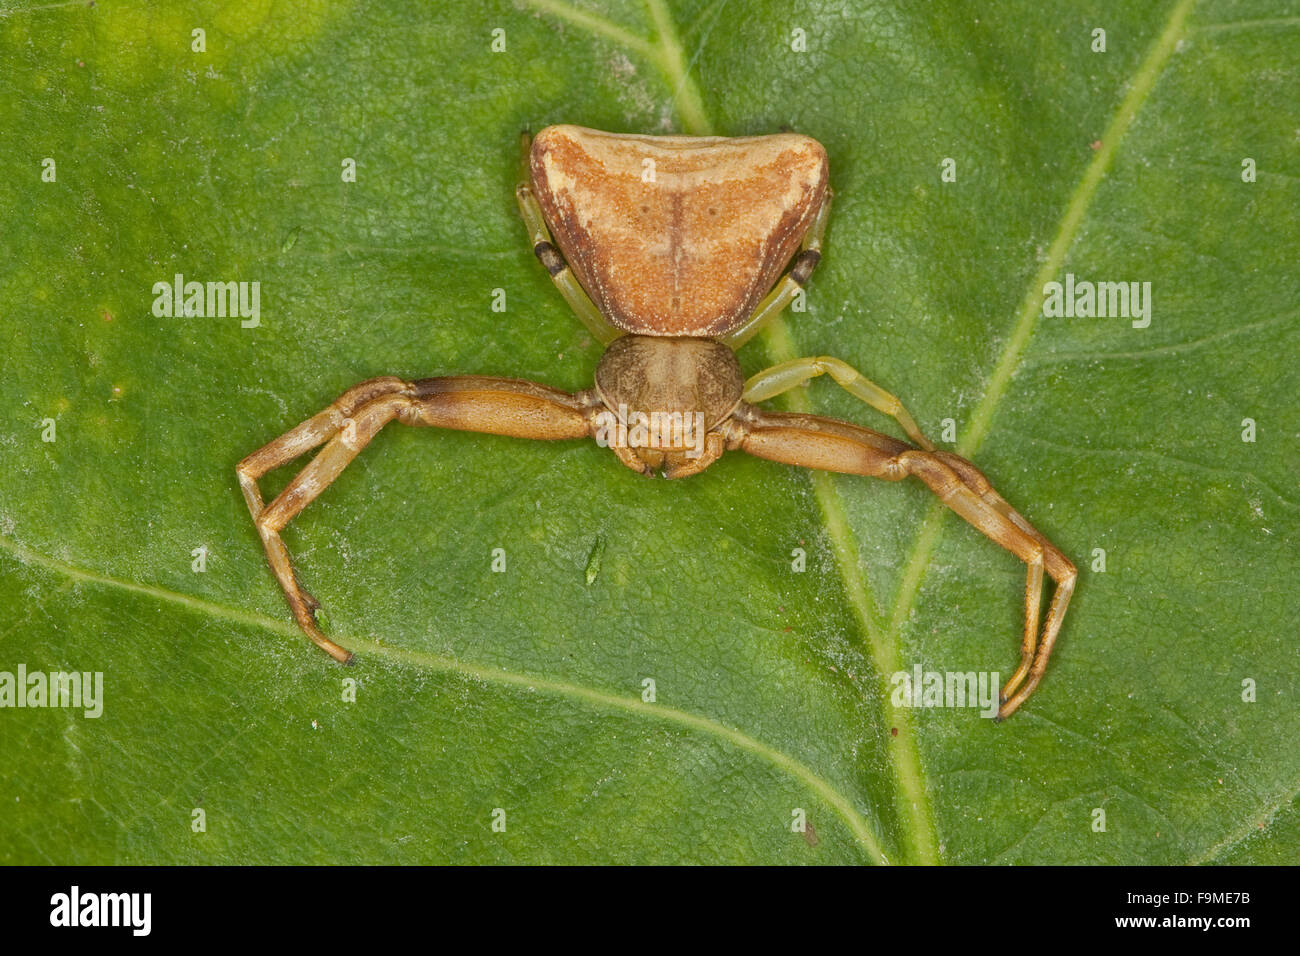 Crab spider, female, Krabbenspinne, Weibchen, Pistius truncatus, Krabbenspinnen, Thomisidae, crab spiders Stock Photo